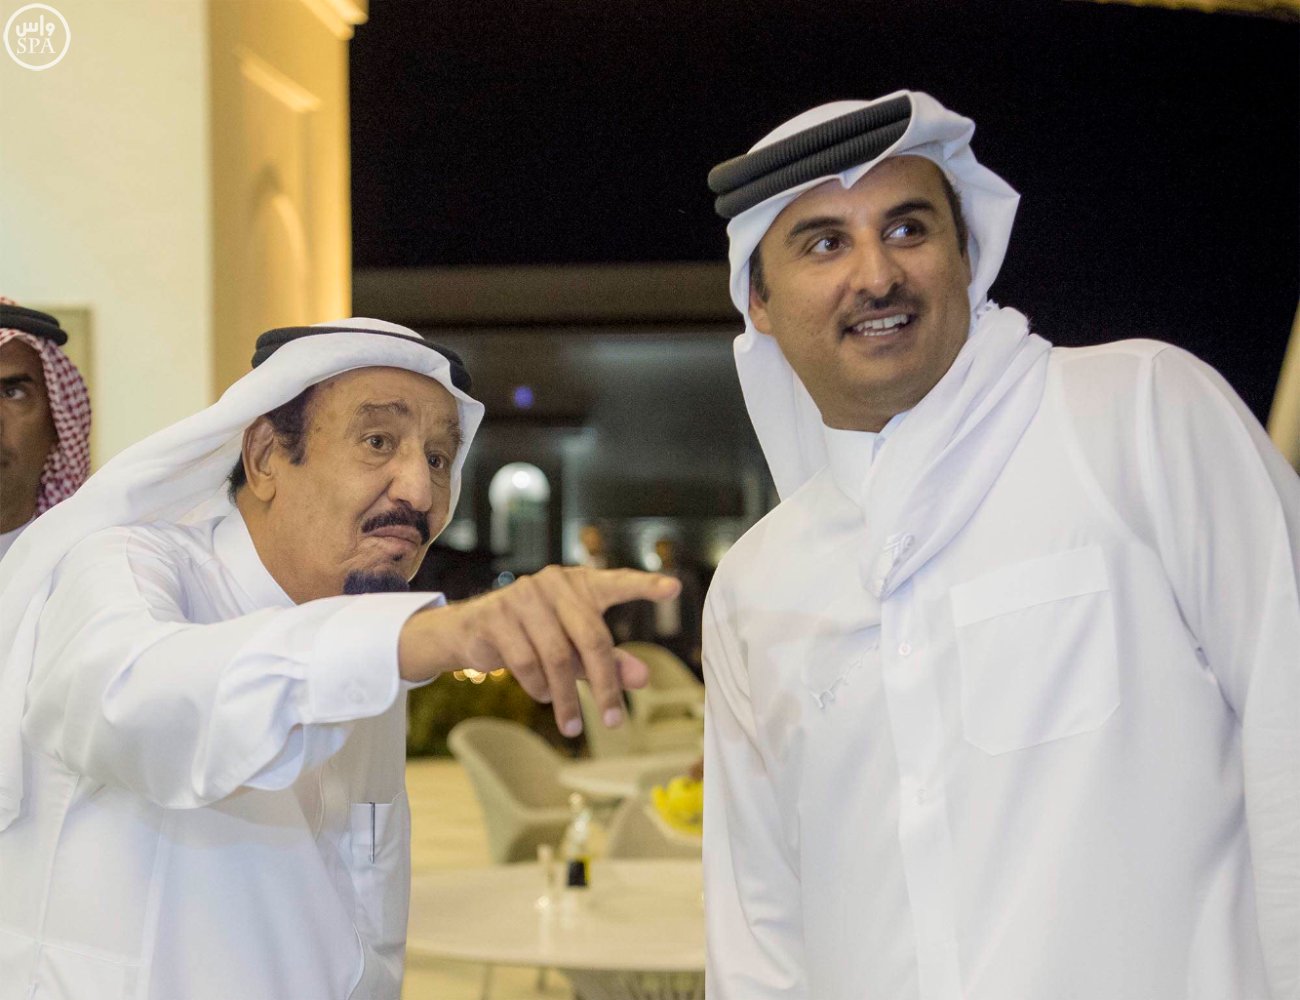 شاهد بالصور .. الملك يستقبل أمير قطر في طنجة المغربية